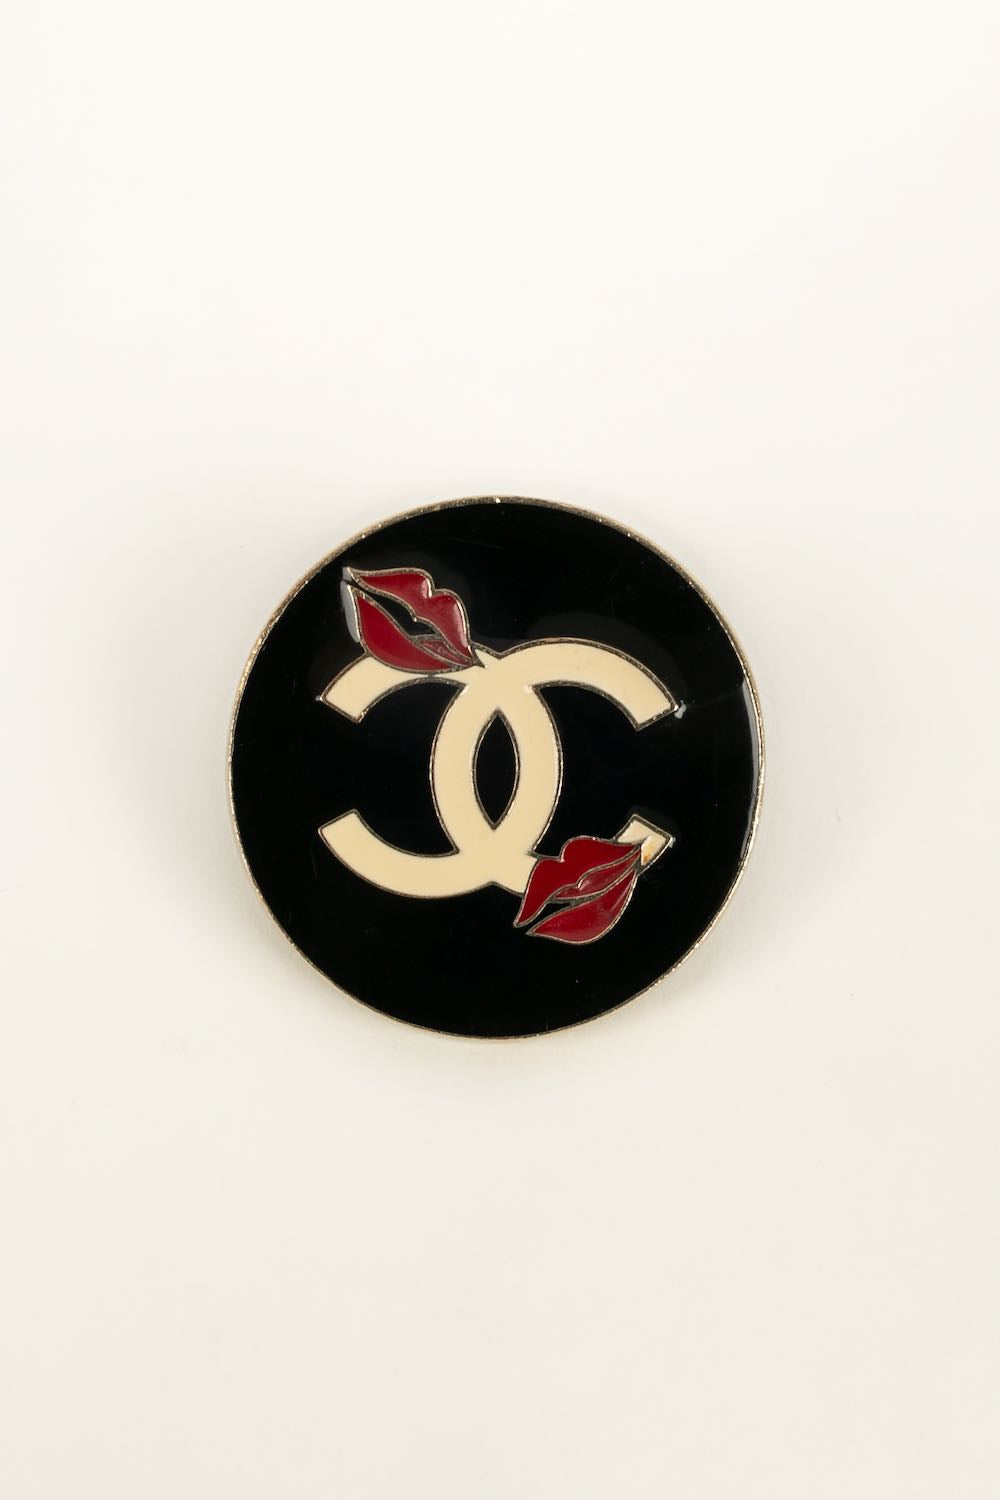 Pins Make Up Chanel 2004